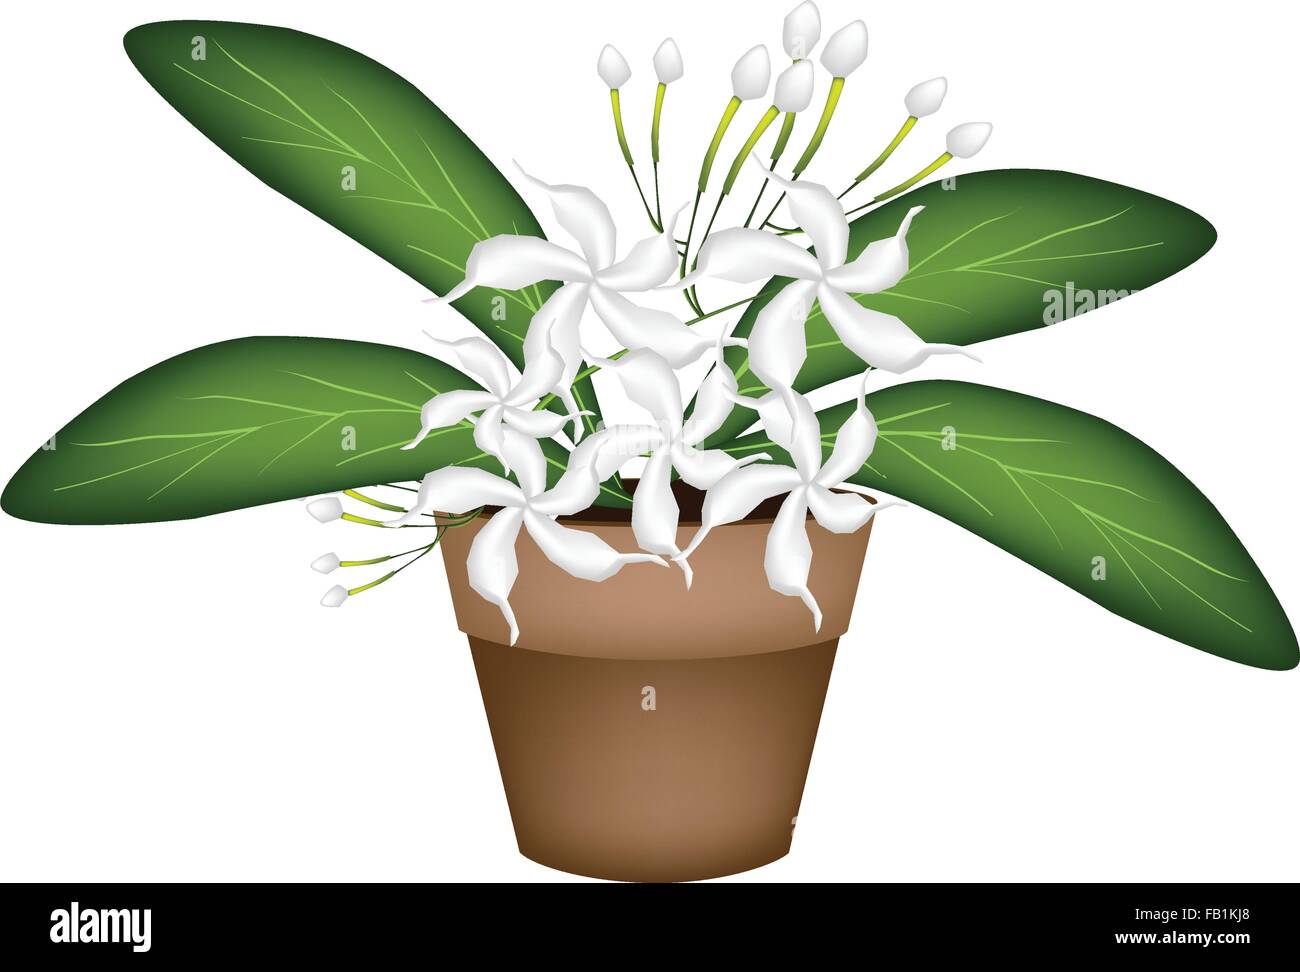 Schöne Blume, Darstellung der schönen weißen gemeinsame Gardenien oder Cape Jasmin Blumen in Terrakotta Blumentopf für Garten Deko Stock Vektor